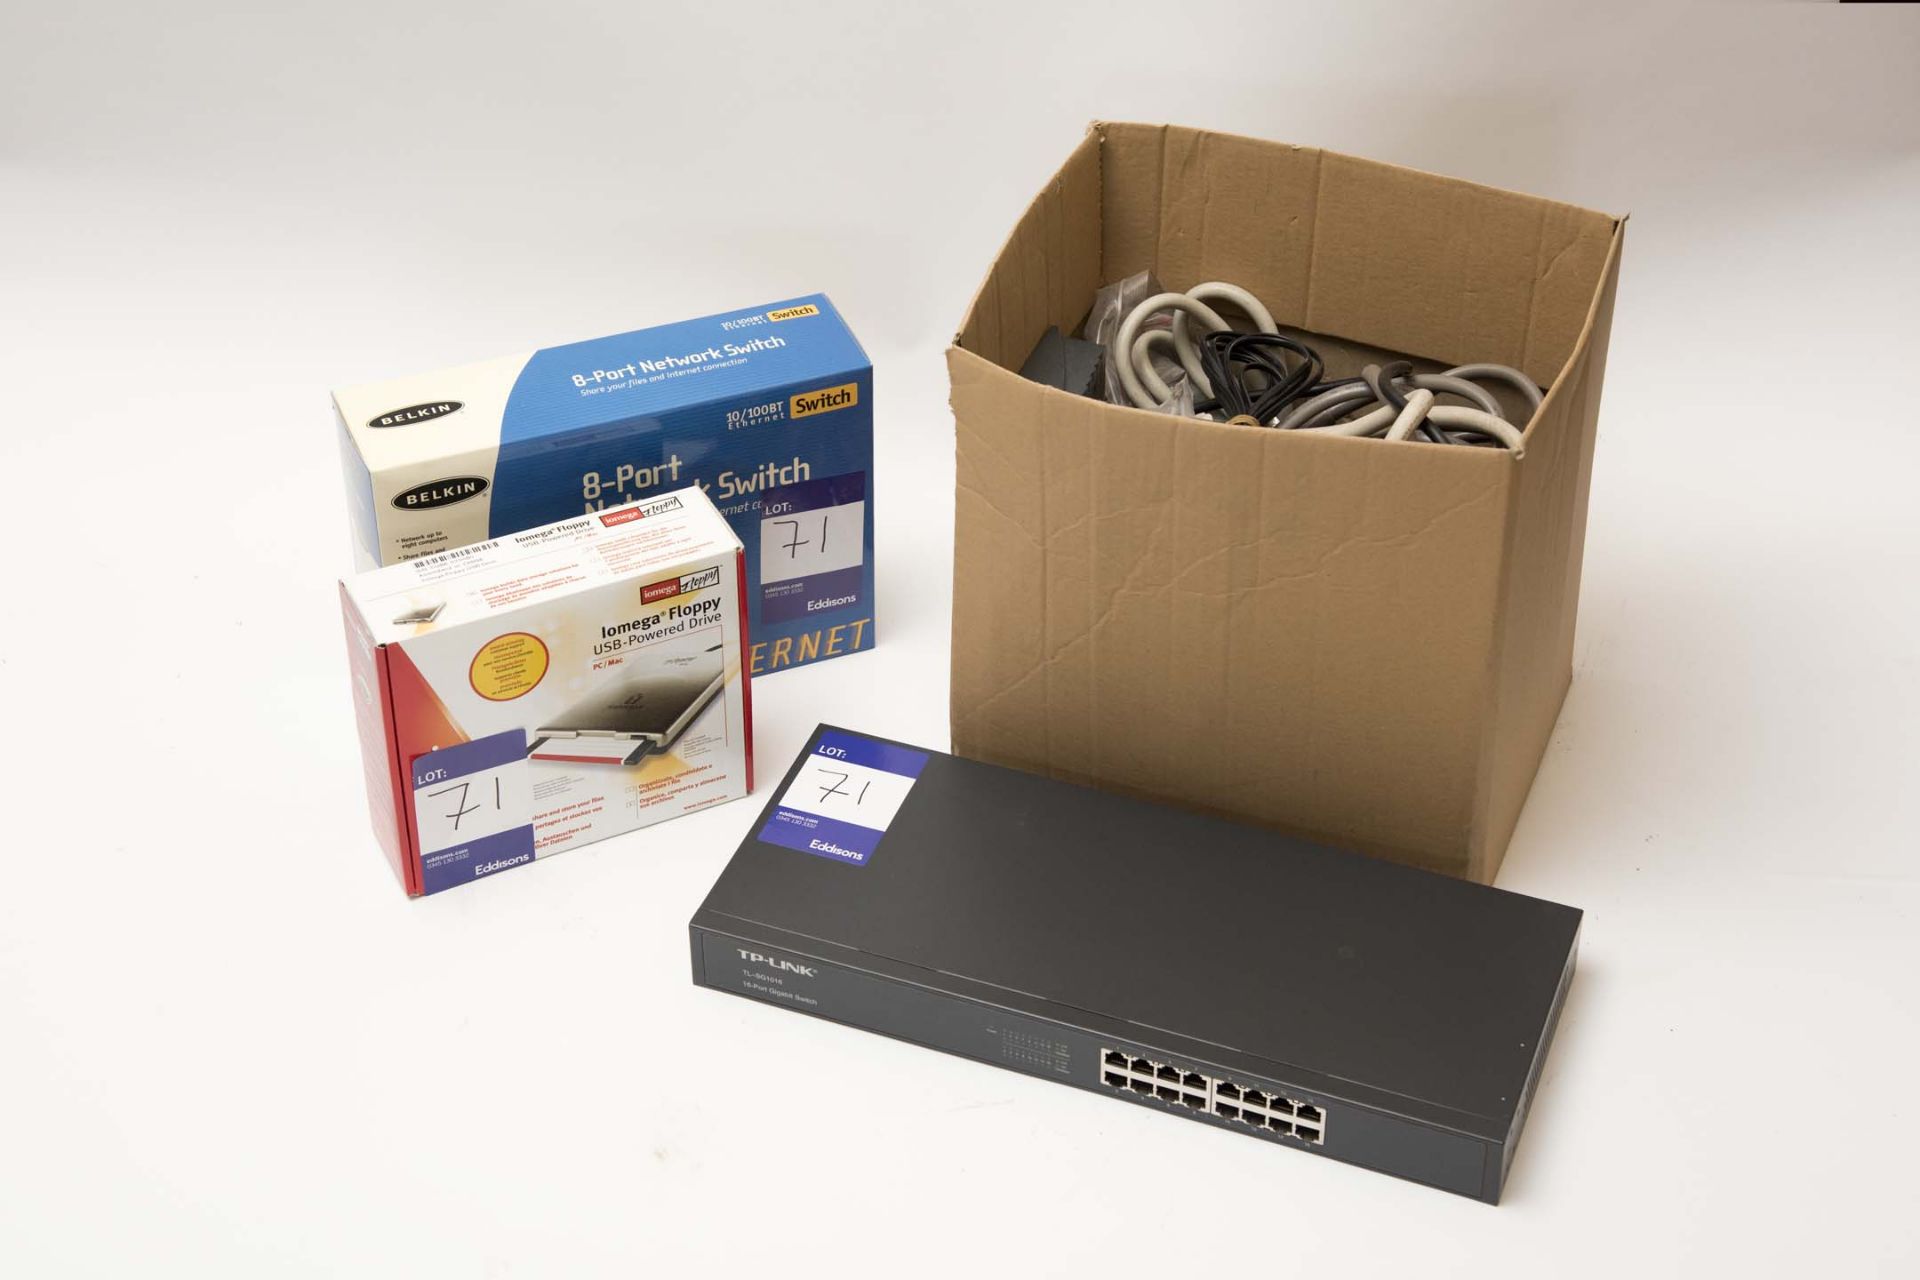 Iomega USB Floppy Disk Drive, Belkin 8 port ethernet hub, Lacie CD Burner SCSI, Box Computer Cables,